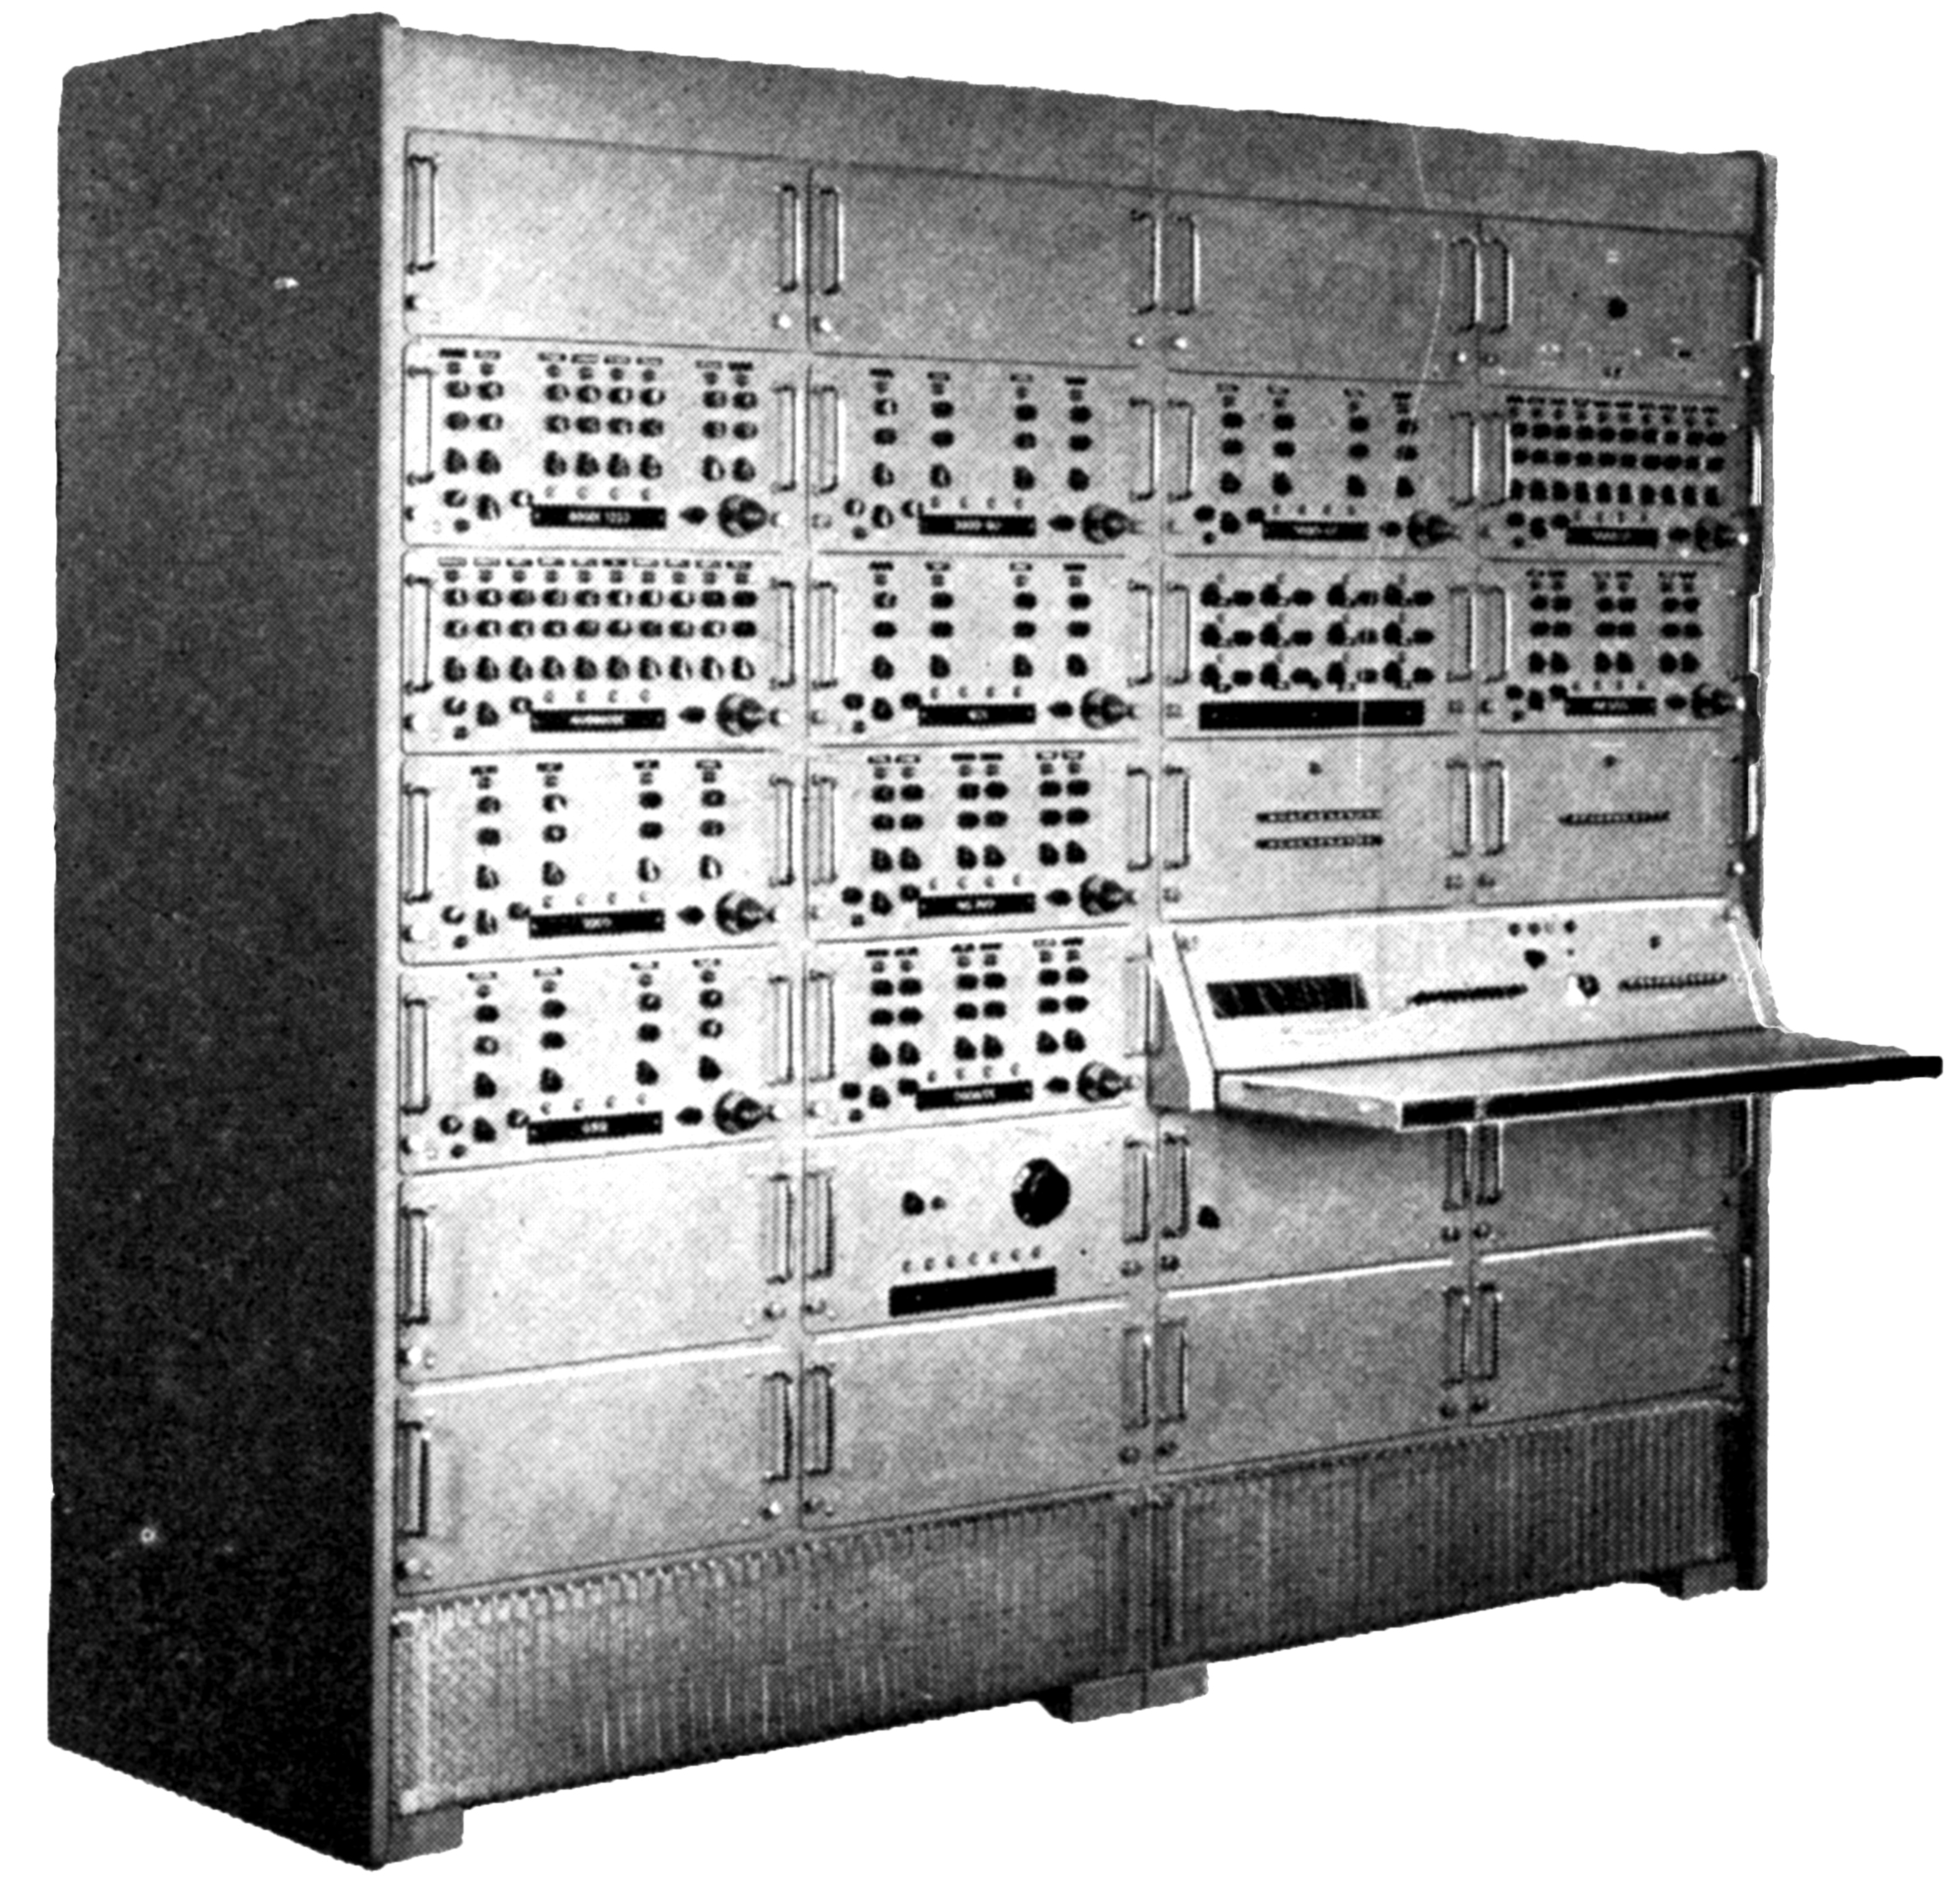 Универс 1 электронный. М-1 (электронно-вычислительная машина). Аналоговые вычислительные машины (АВМ). 2 Поколение ЭВМ (электронно-вычислительной машины). Электронная вычислительная машина ЭВМ 1.